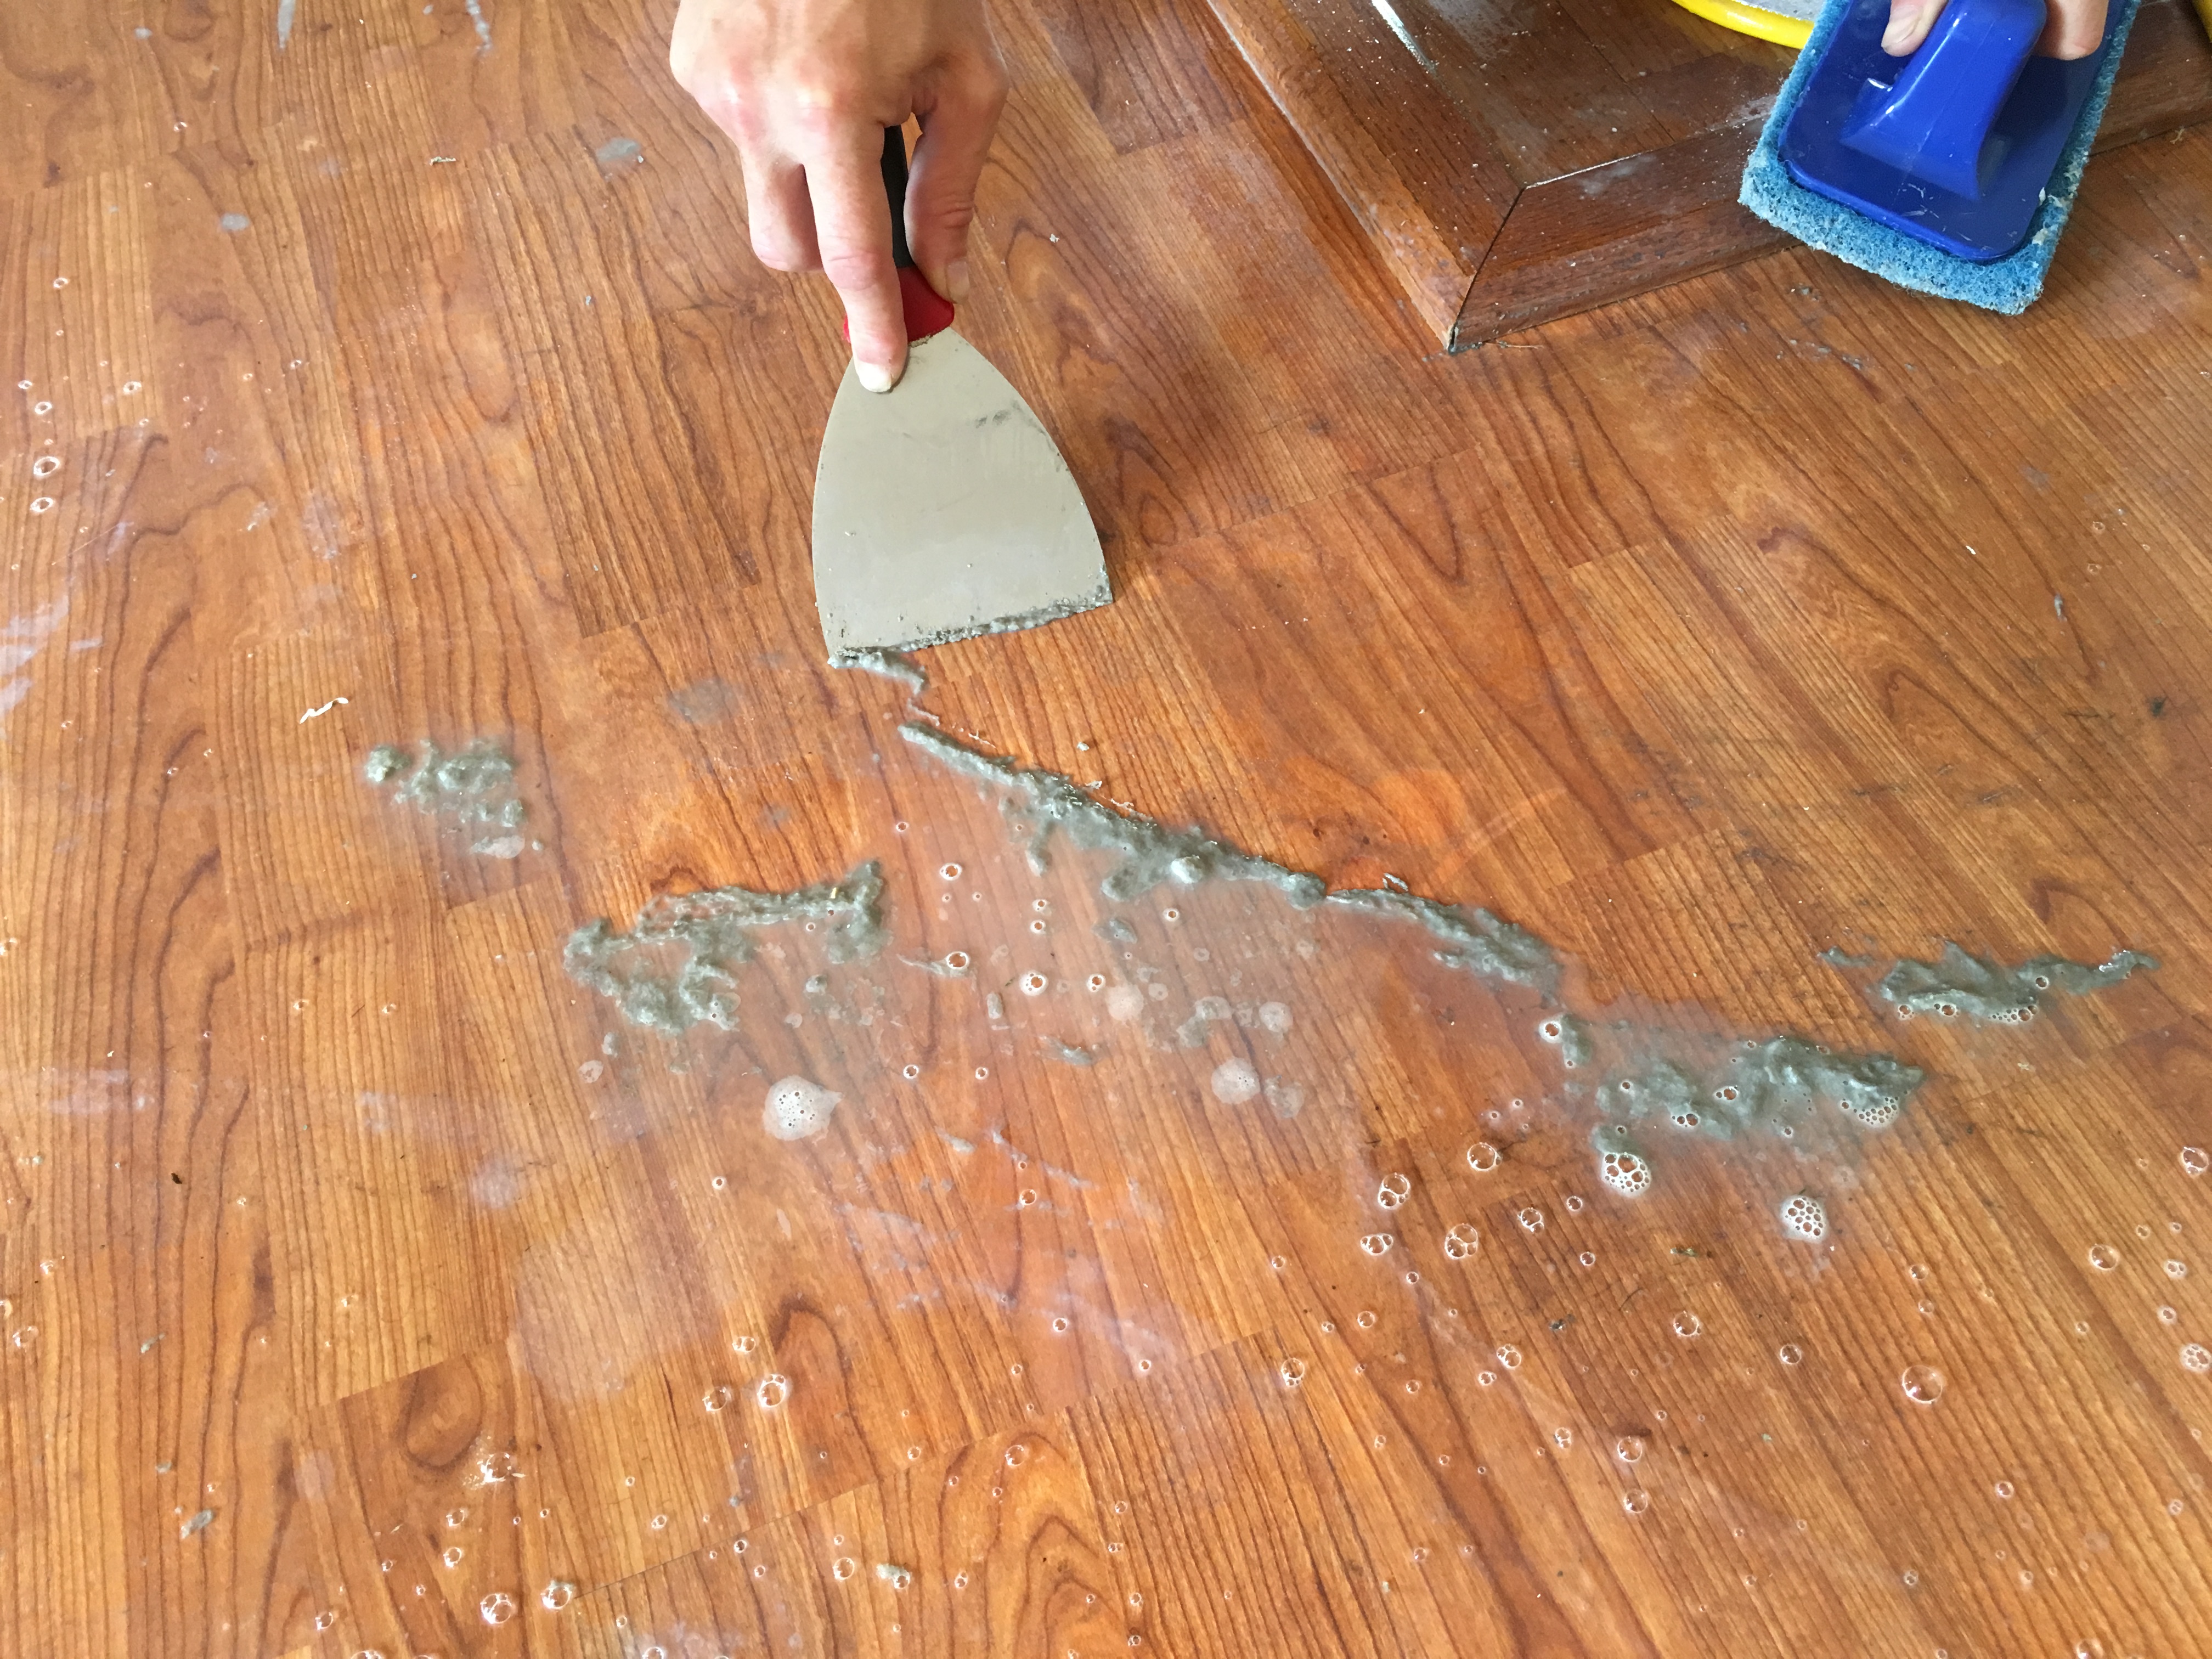 Fort Wayne S Floor Cleaner, How To Remove Wax From Hardwood Floor